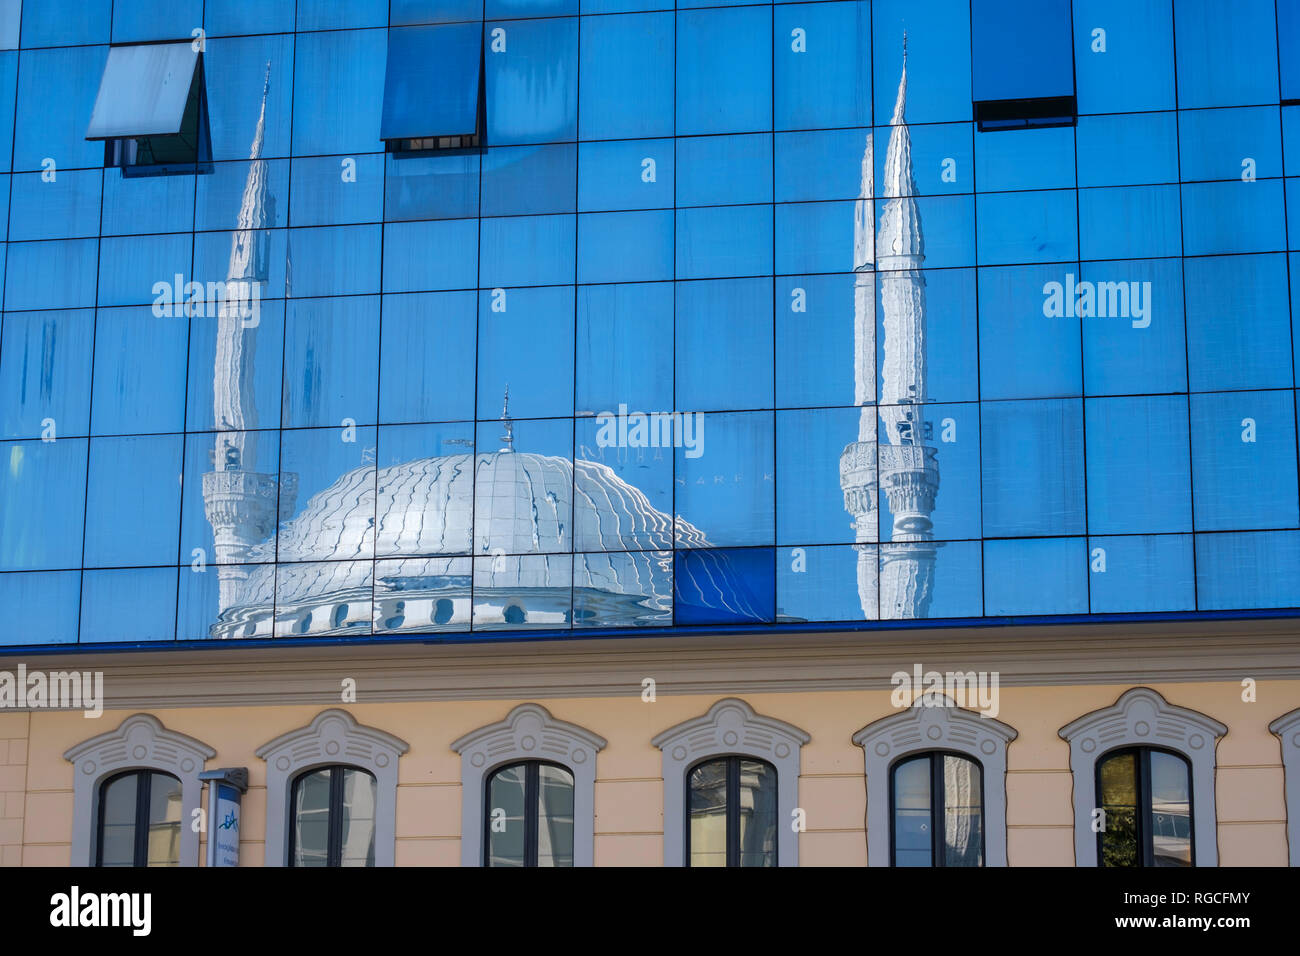 L'Albanie, Shkoder, UER Beker Mosquée, miroité en façade en verre Banque D'Images